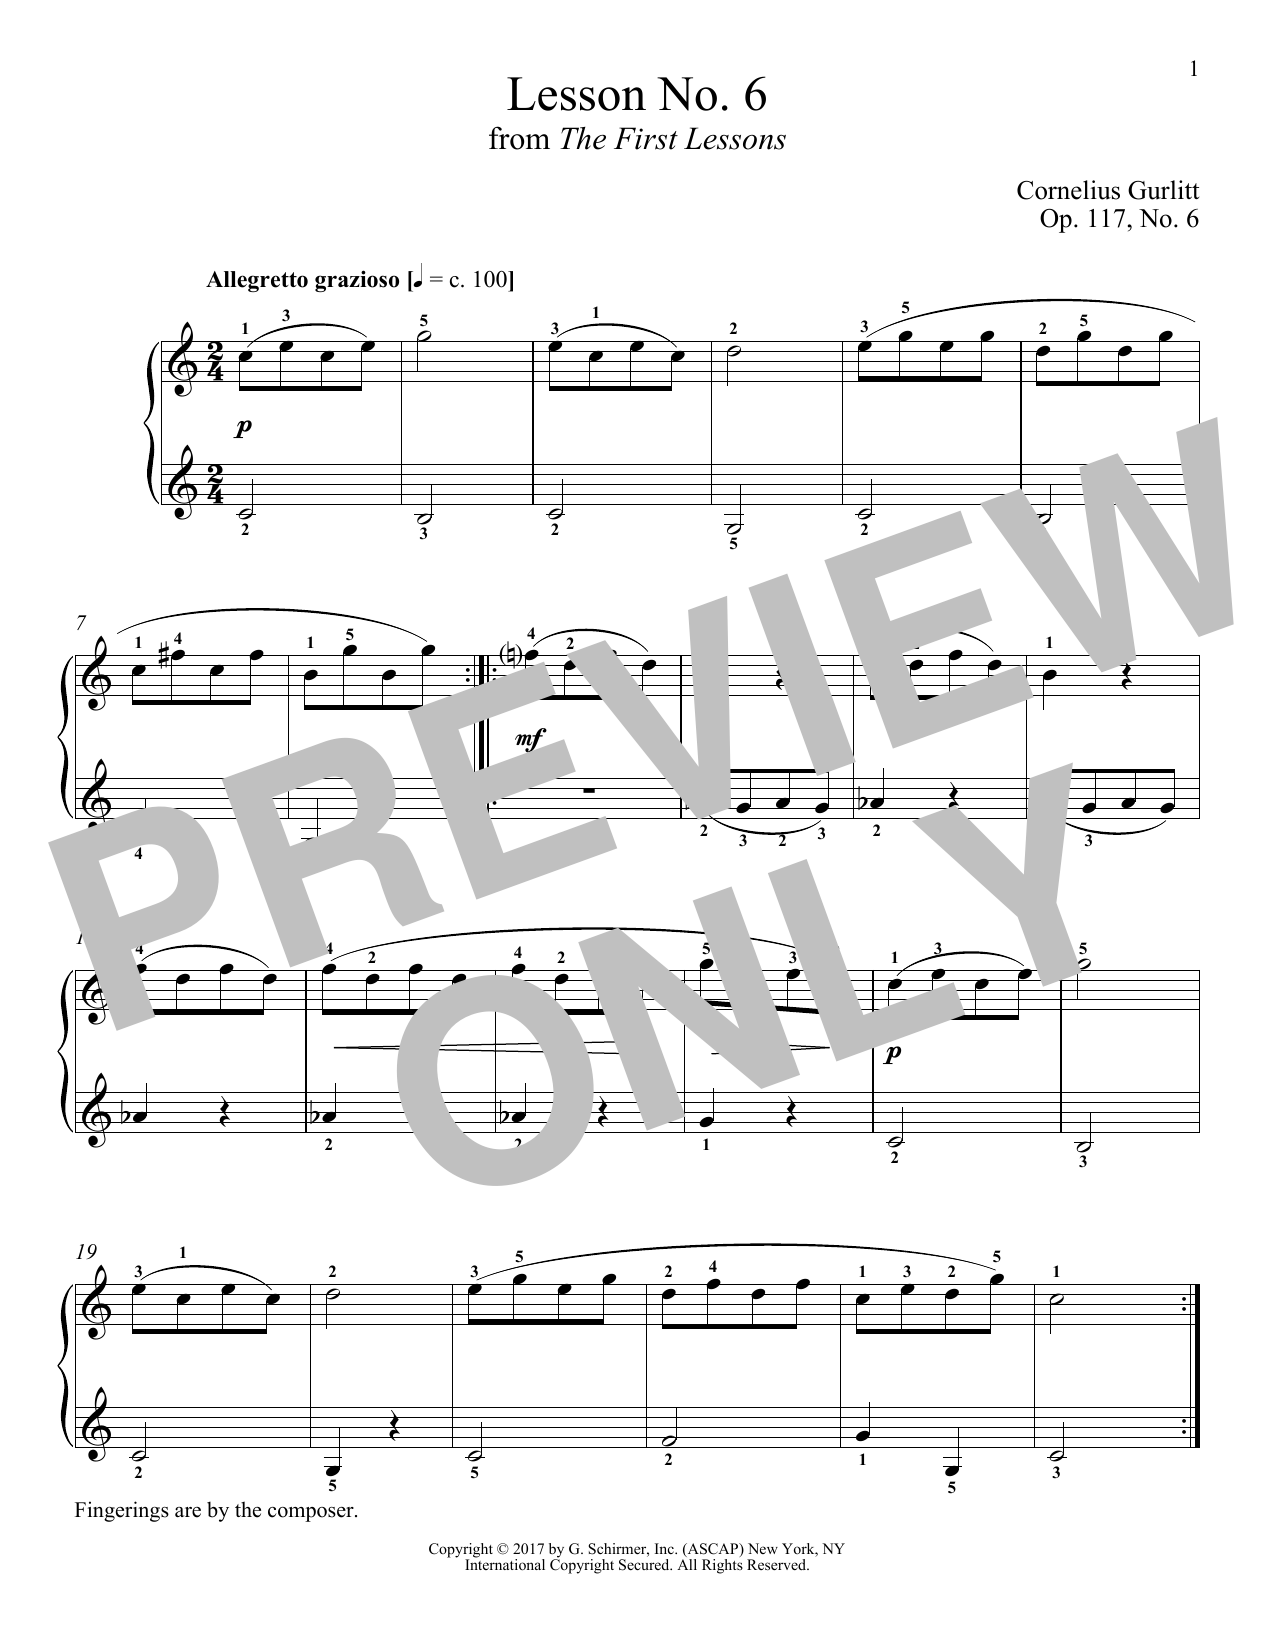 Cornelius Gurlitt Allegretto grazioso, Op. 117, No. 6 sheet music notes and chords arranged for Piano Solo